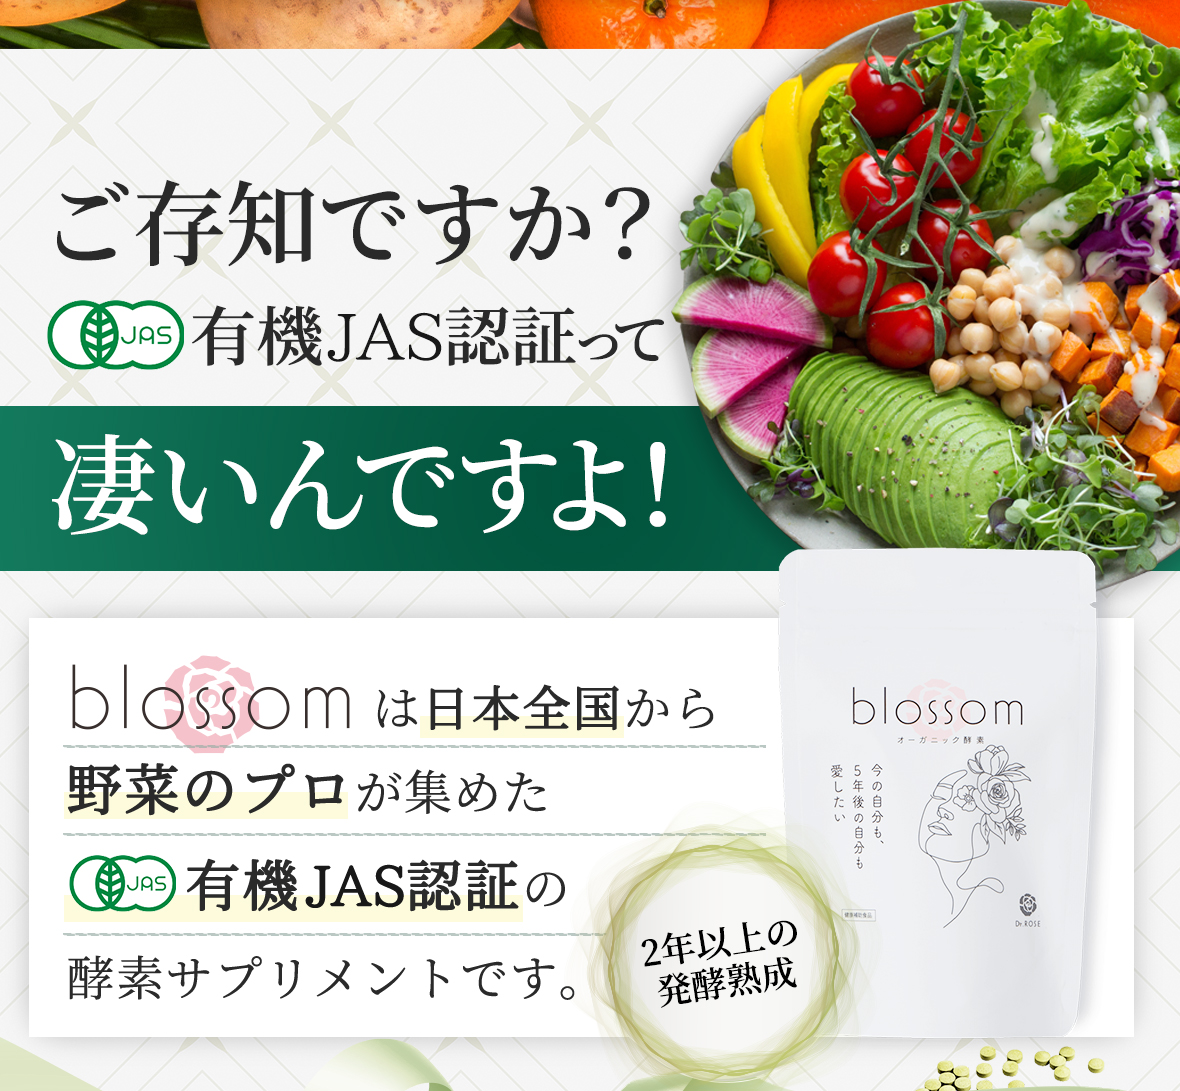 ご存じですか？有機JAS認証って凄いんですよ！blossomは日本全国から野菜のプロが集めた有機JAS認証の酵素サプリメントです。